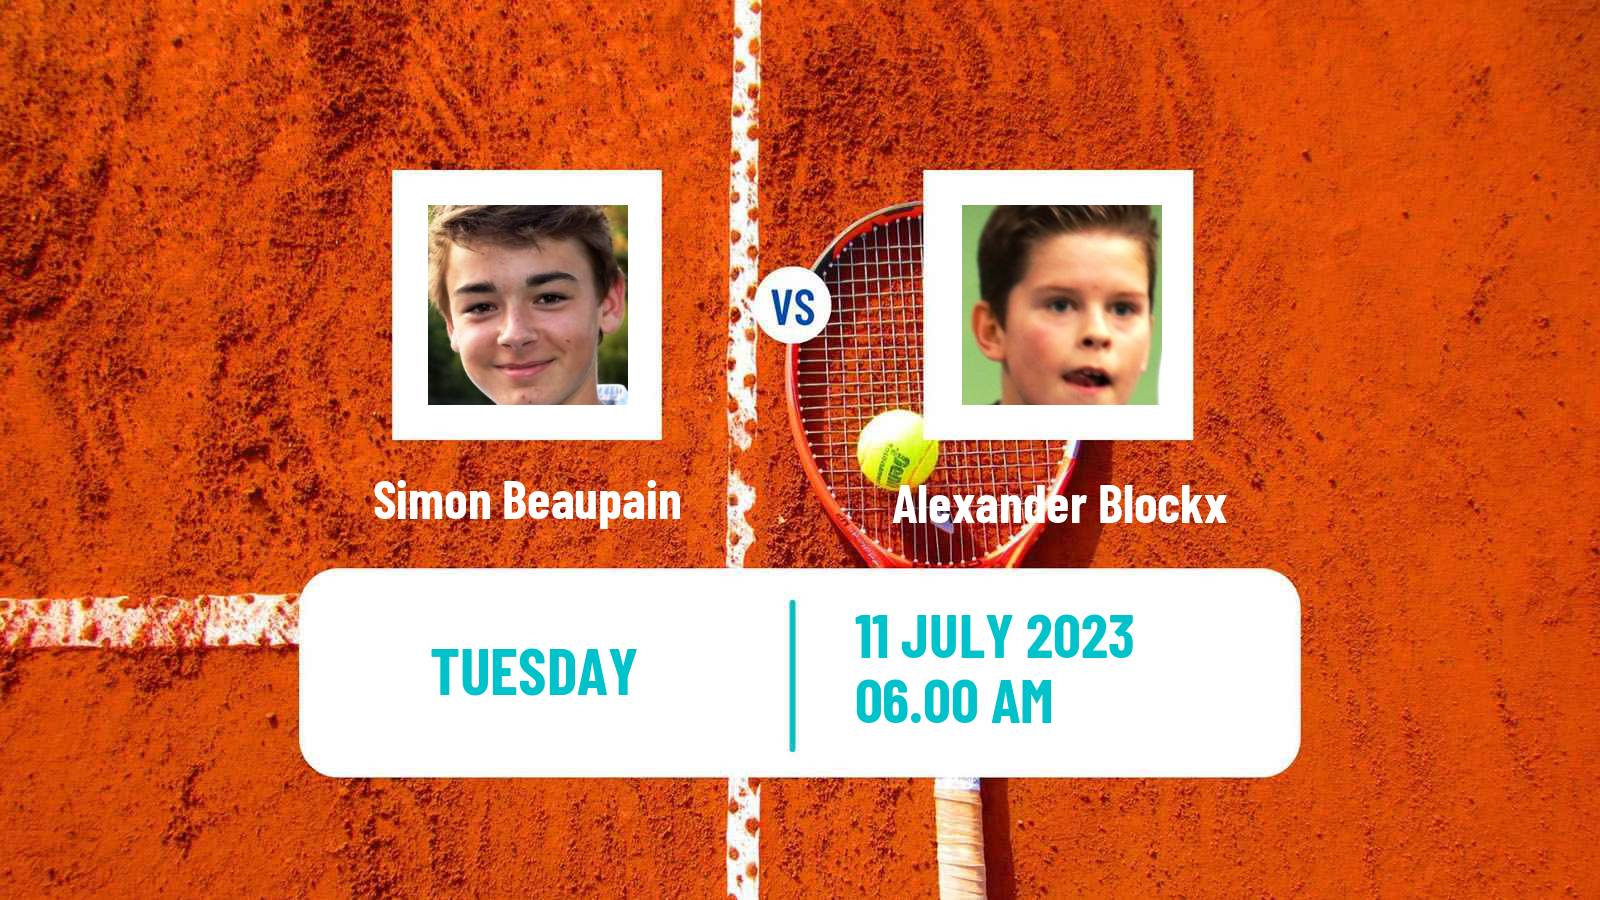 Tennis ITF M25 Esch Alzette Men 2023 Simon Beaupain - Alexander Blockx